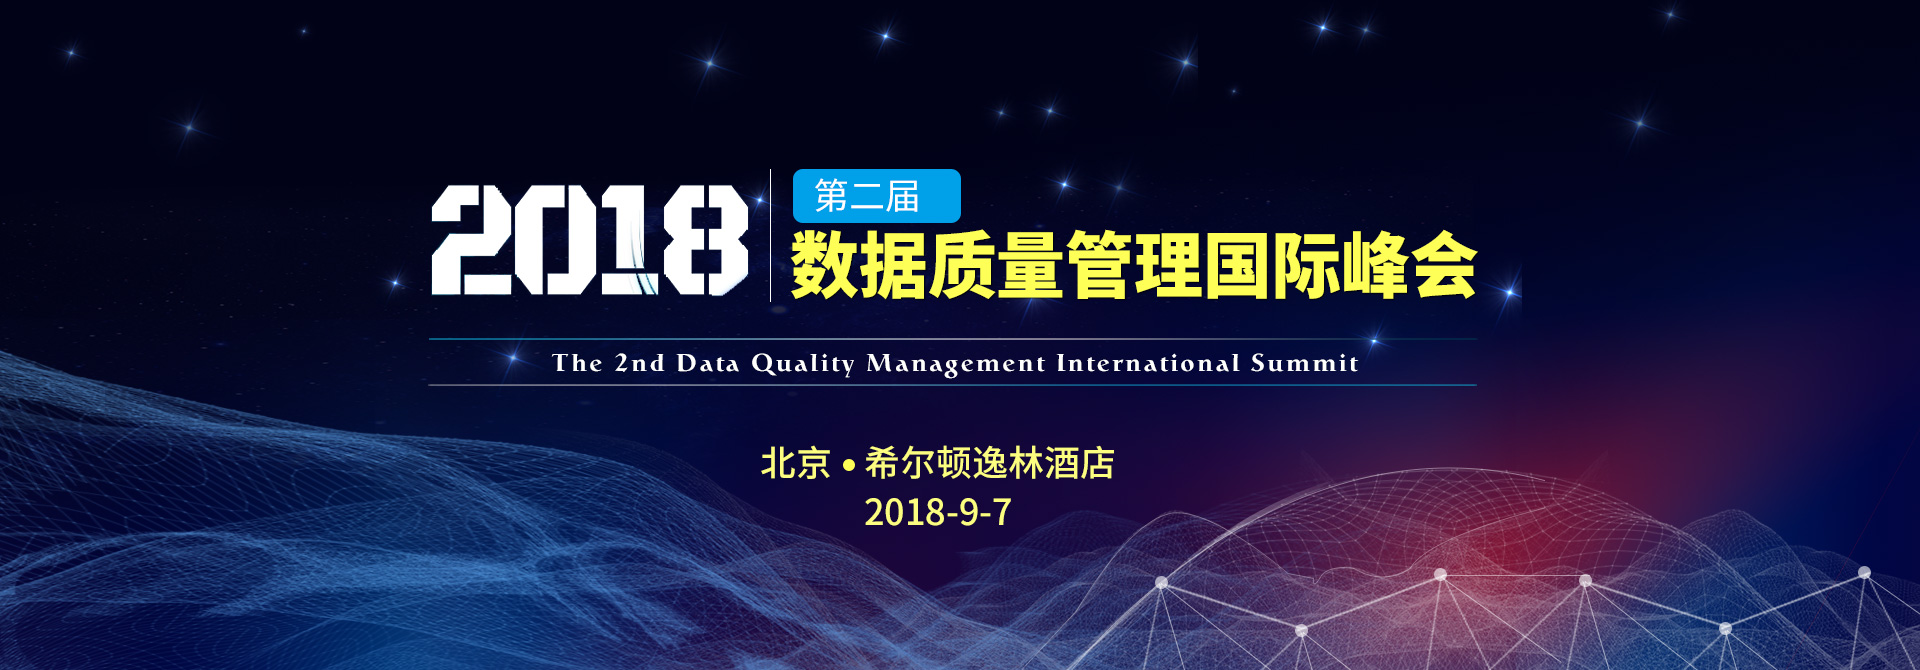 2018第二届数据质量管理国际峰会